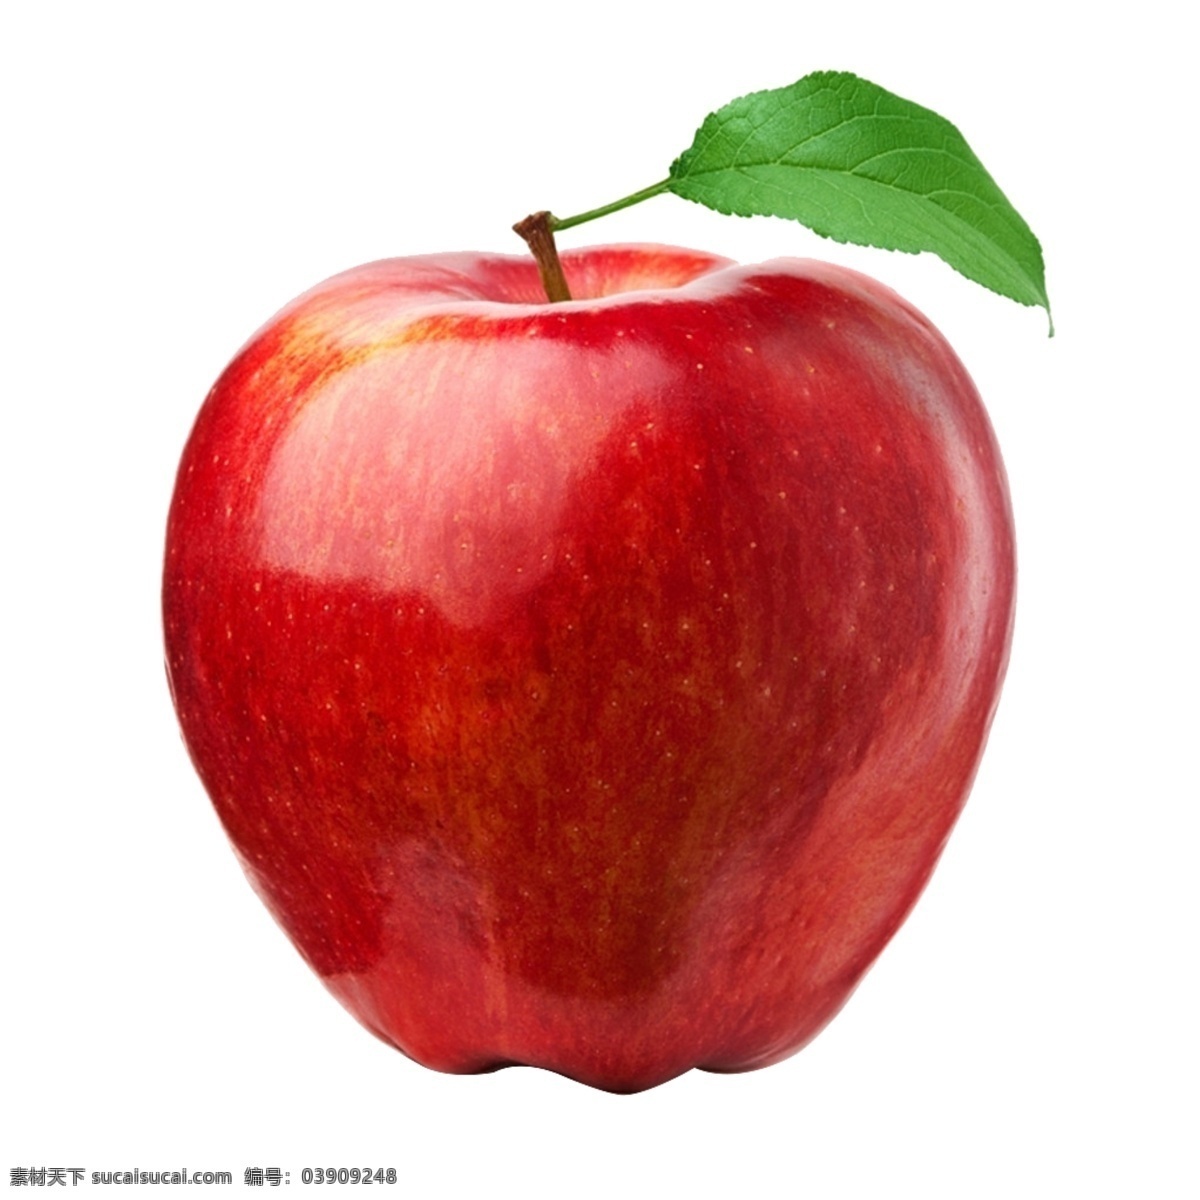 红苹果 苹果 大红苹果 甜苹果 果子 自然景观 自然风光